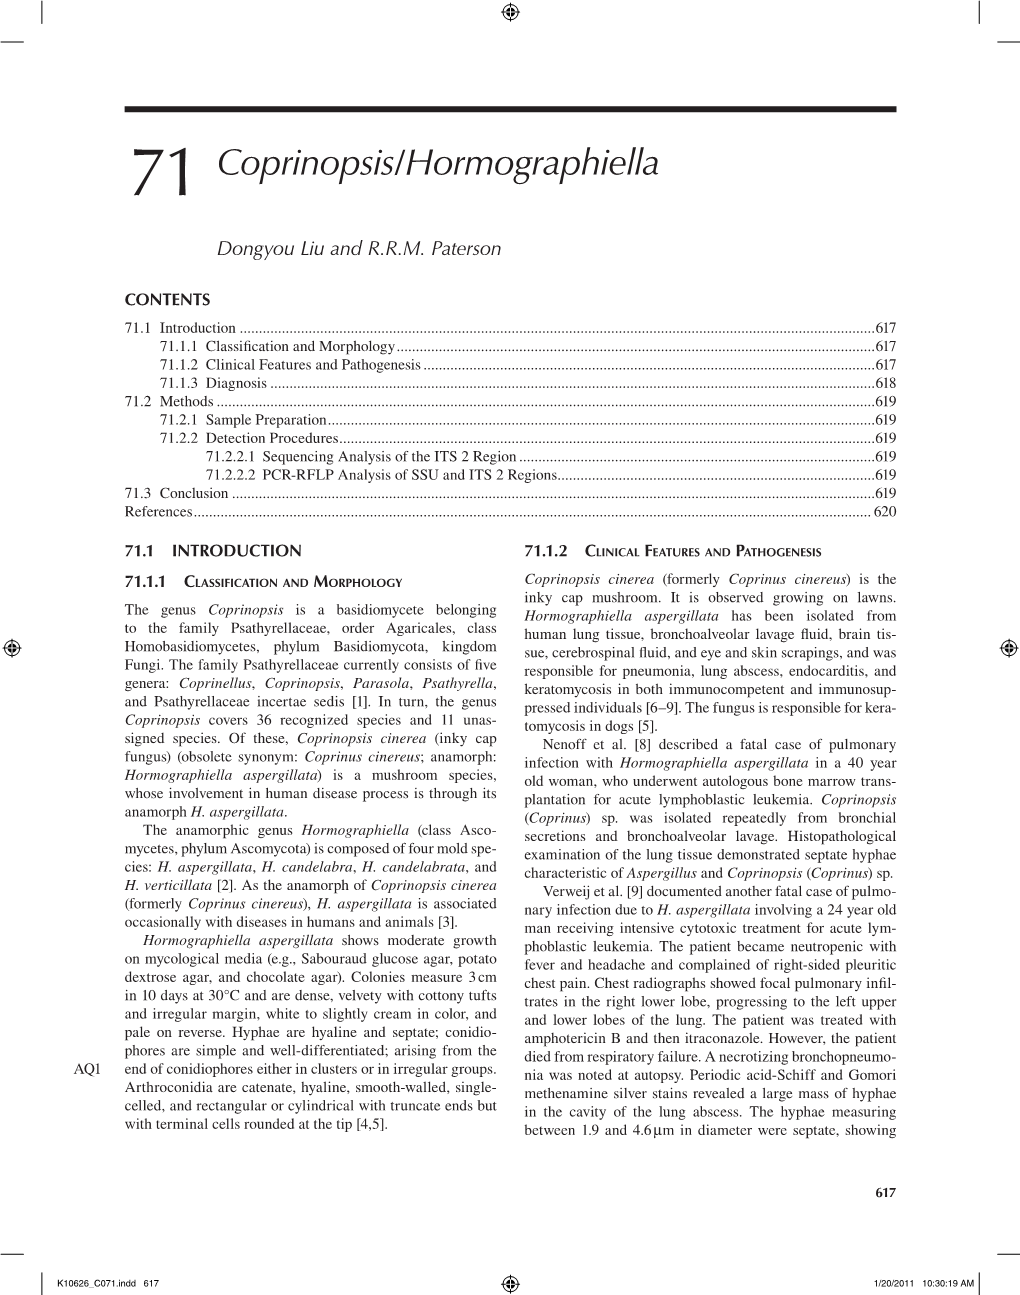 71 Coprinopsis/Hormographiella